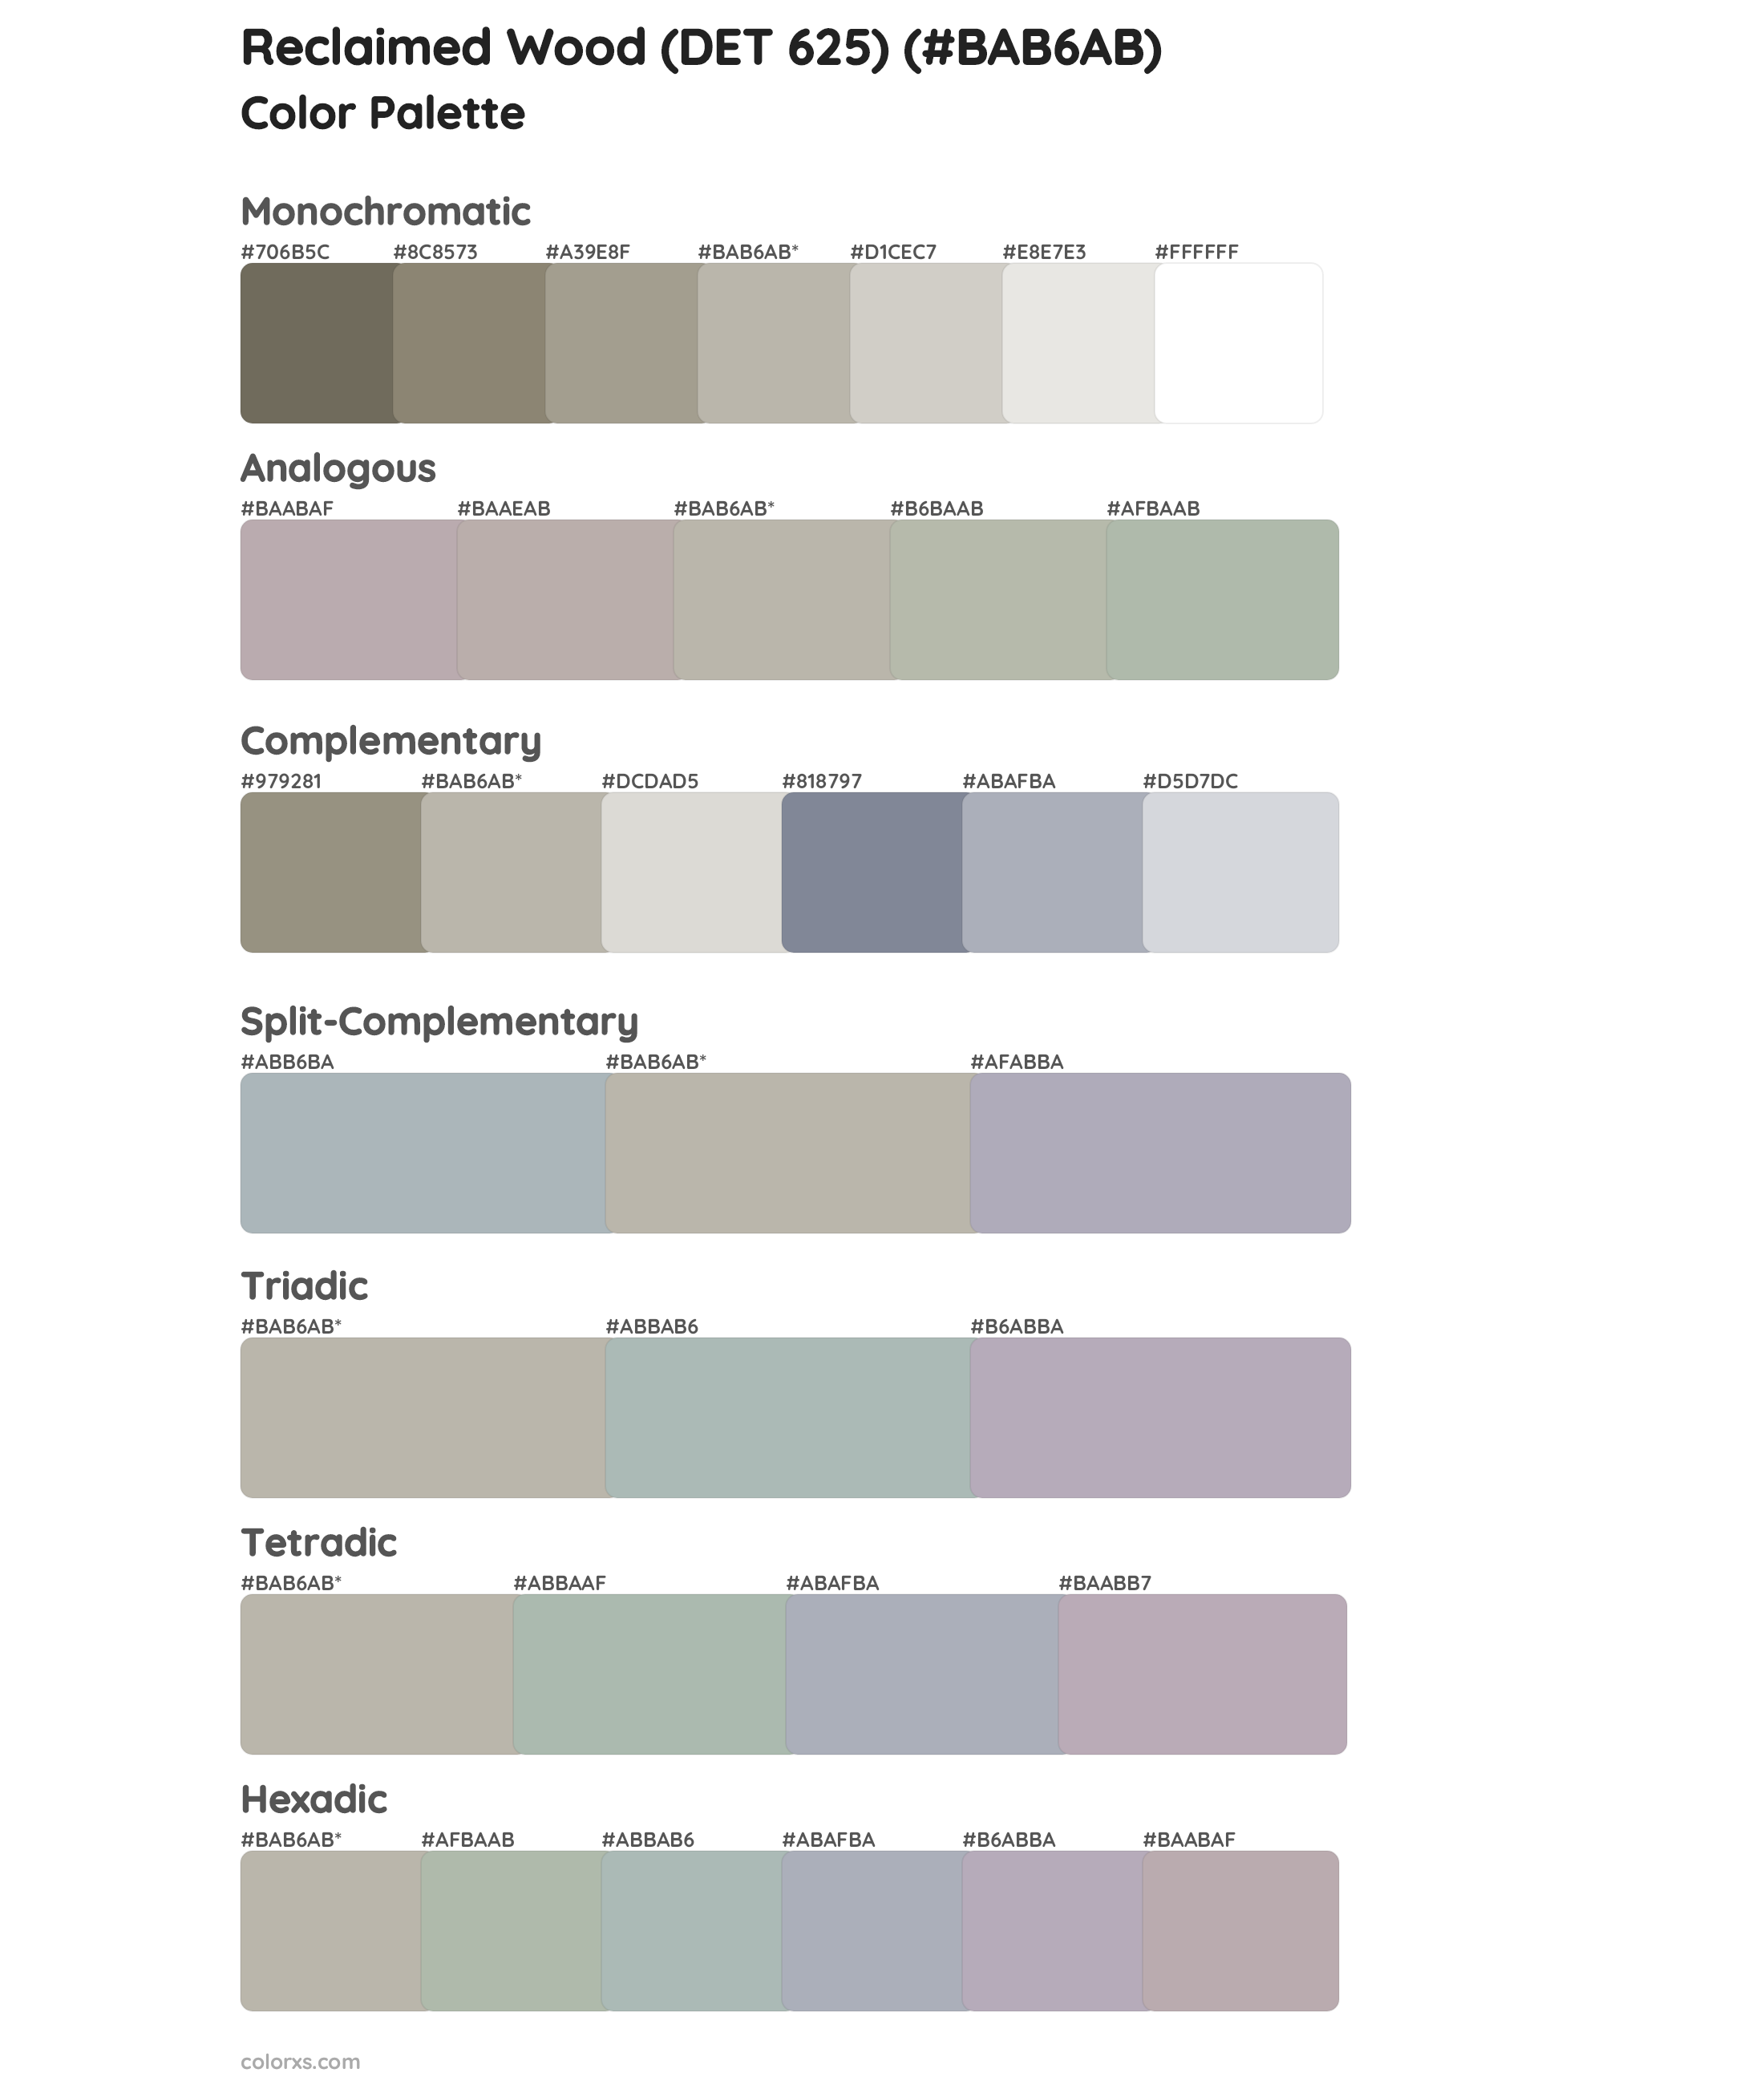 Reclaimed Wood (DET 625) Color Scheme Palettes